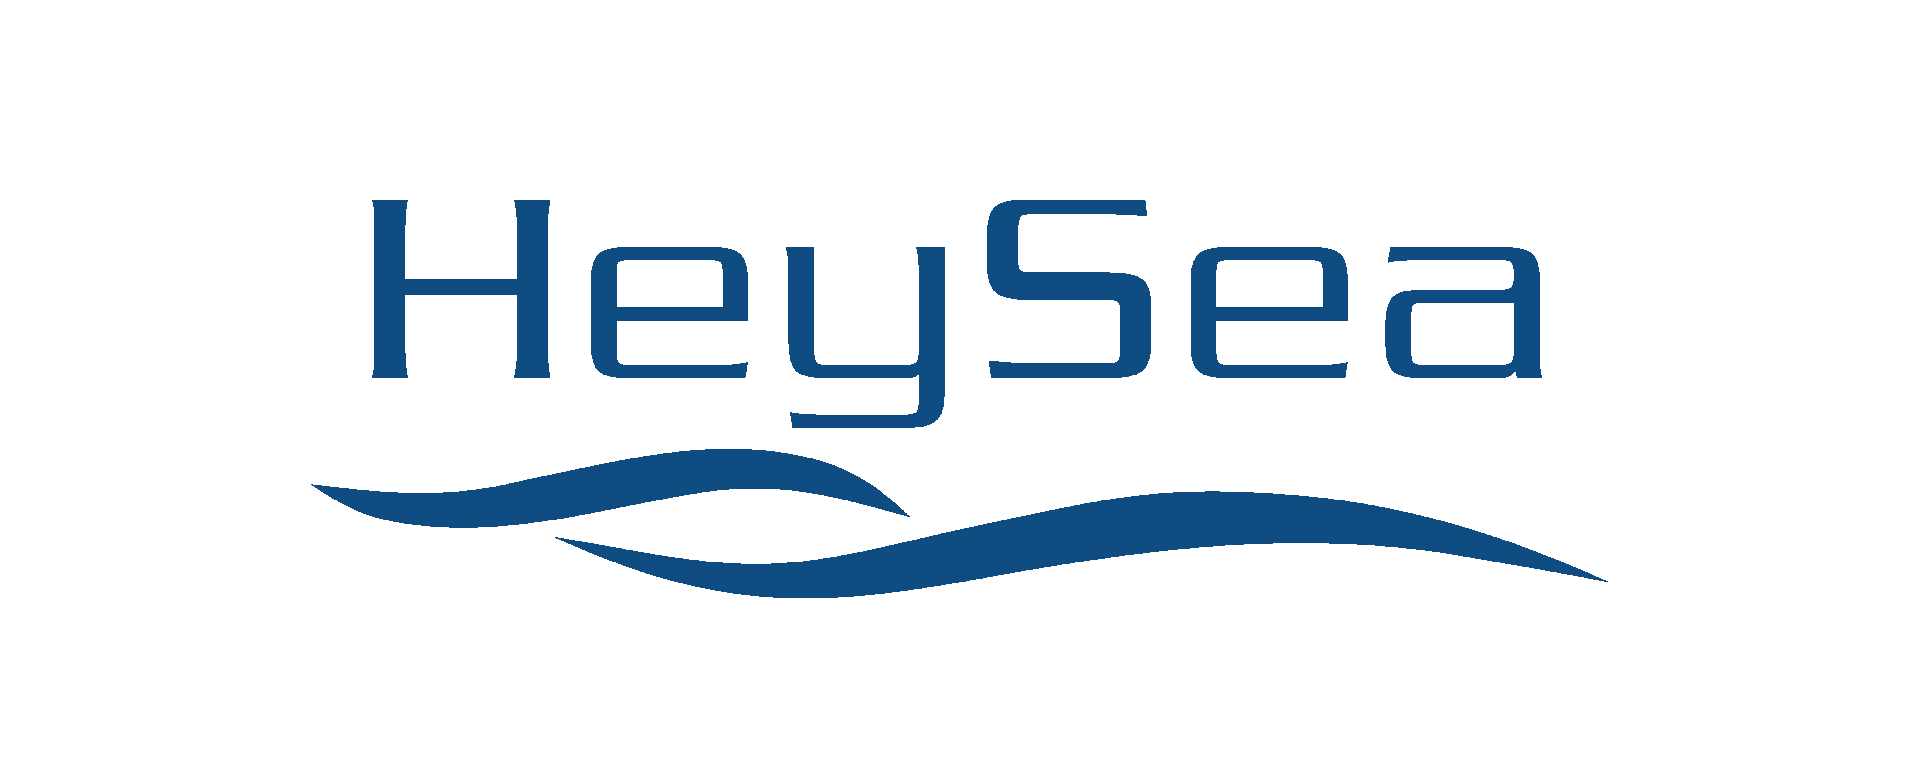 heysea logo